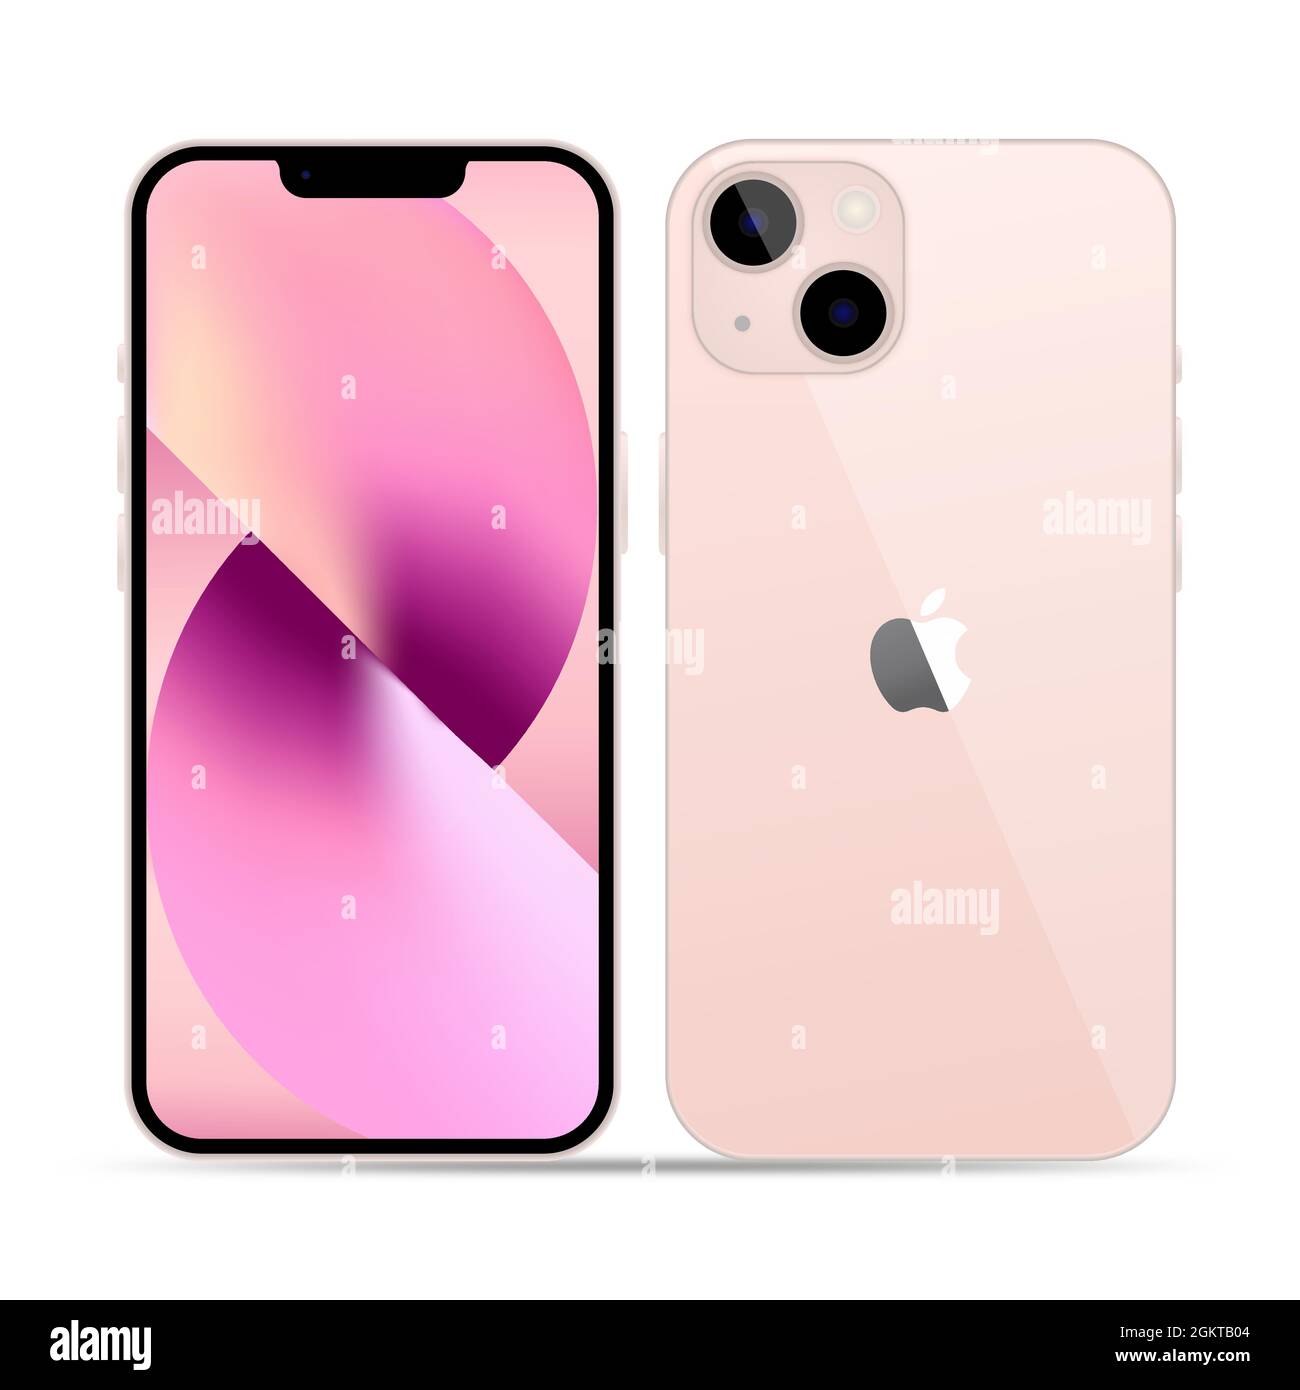 Vinnytsia, Ucraina - 15 settembre 2021. Apple iPhone 13 colore rosa. Apple iPhone 12 Pro o Pro Max in grafite. Schermo mock-up per la vista frontale Illustrazione Vettoriale